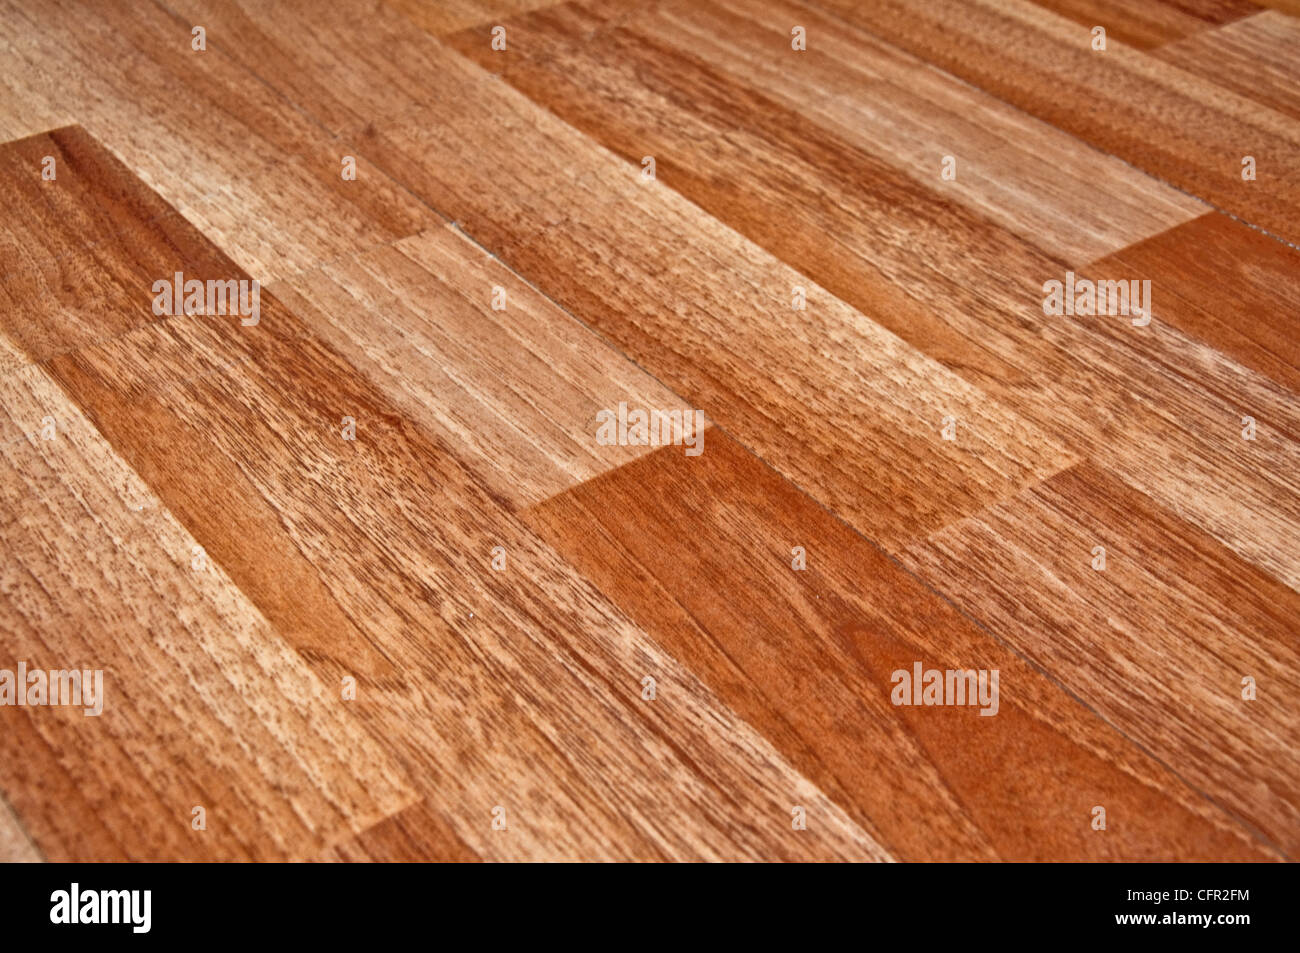 Detail eines schönen braunen laminierte Holzfußbodens hautnah Stockfoto